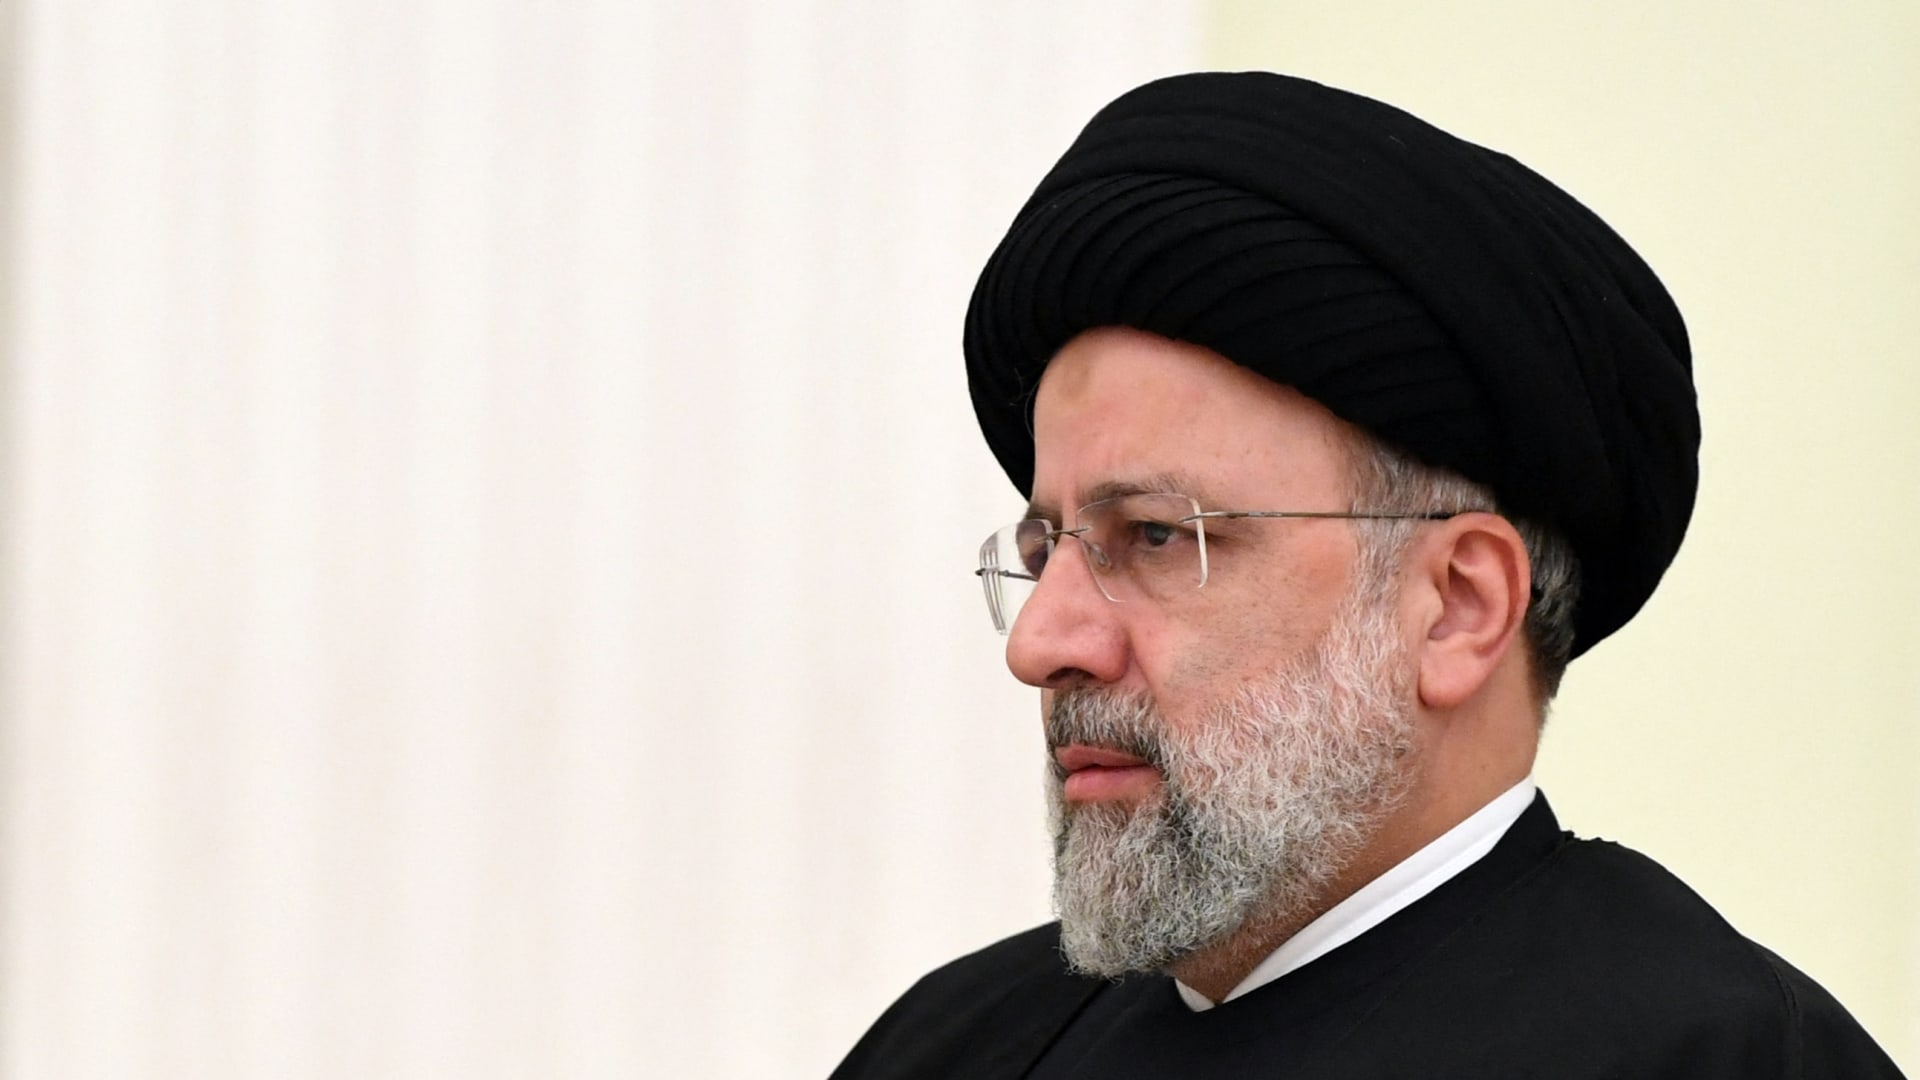 تعالوا نفكر.. ما أهمية وصول إبراهيم رئيسي إلى سدة الحكم في إيران وما تأثيره على مستقبل البلاد؟